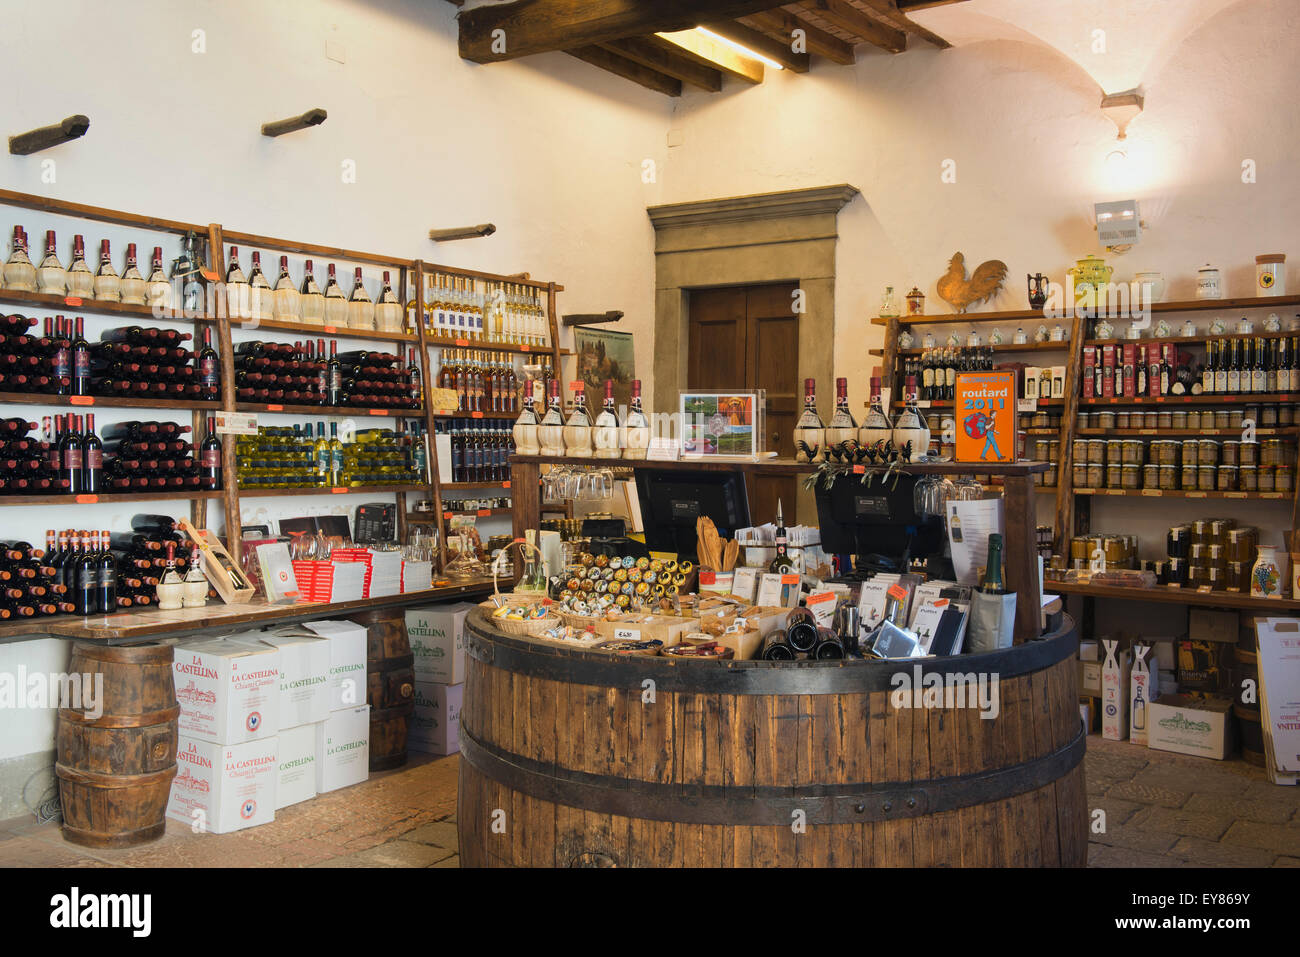 Tienda de vinos con botellas de vino y pequeñas delicias, Castellina in Chianti, Toscana, Italia Foto de stock